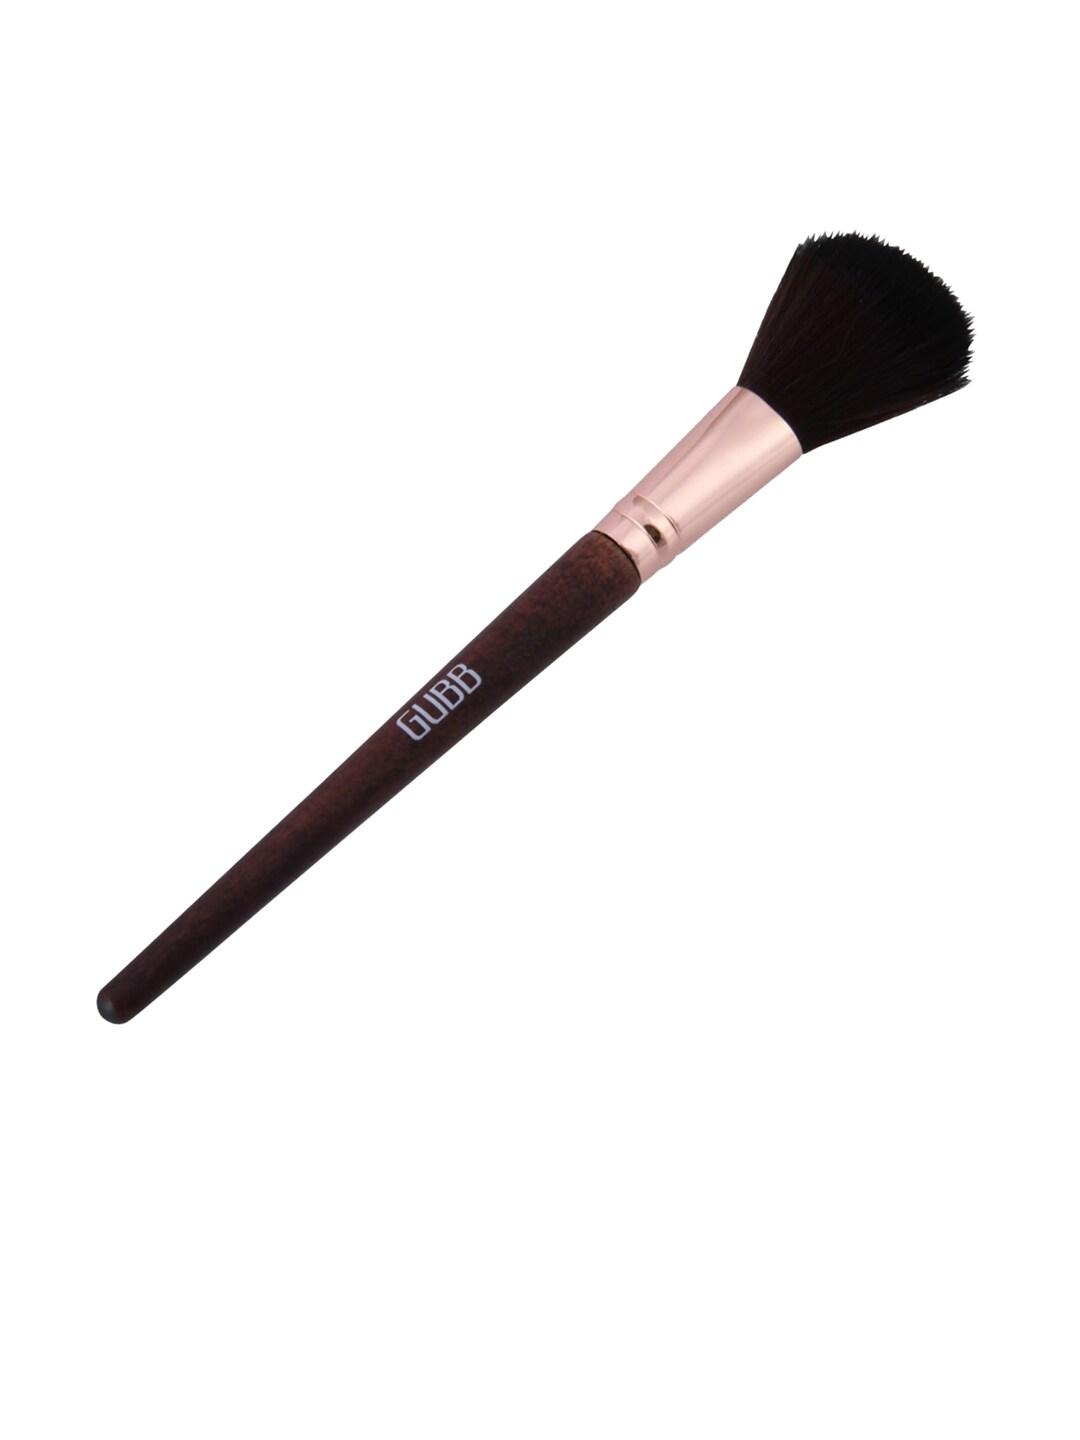 GUBB Makeup Blush Brush 90g